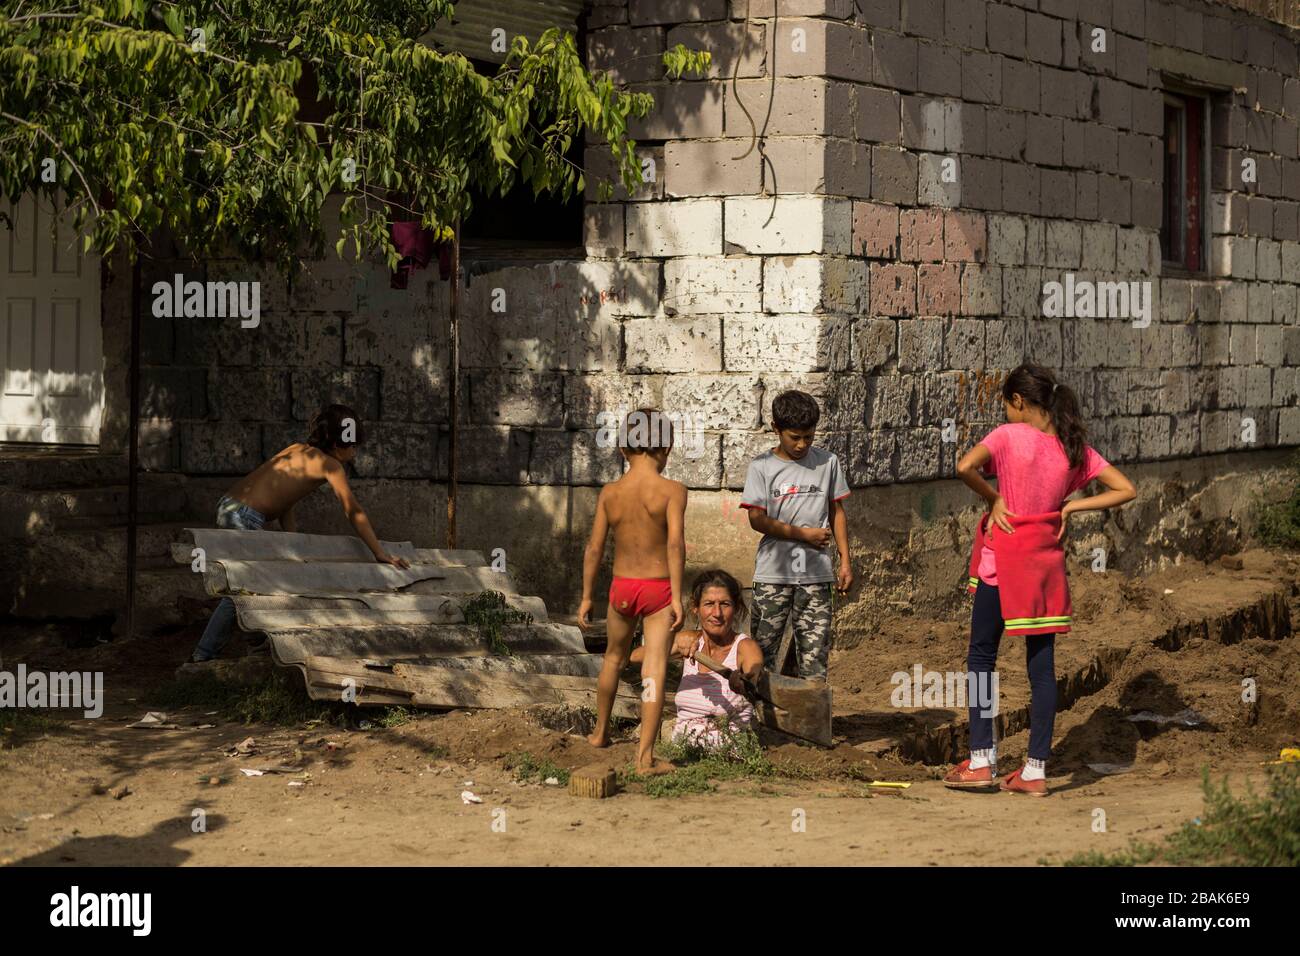 Roma-Familie in einem armen, ländlichen Raum Ungarns Stockfoto